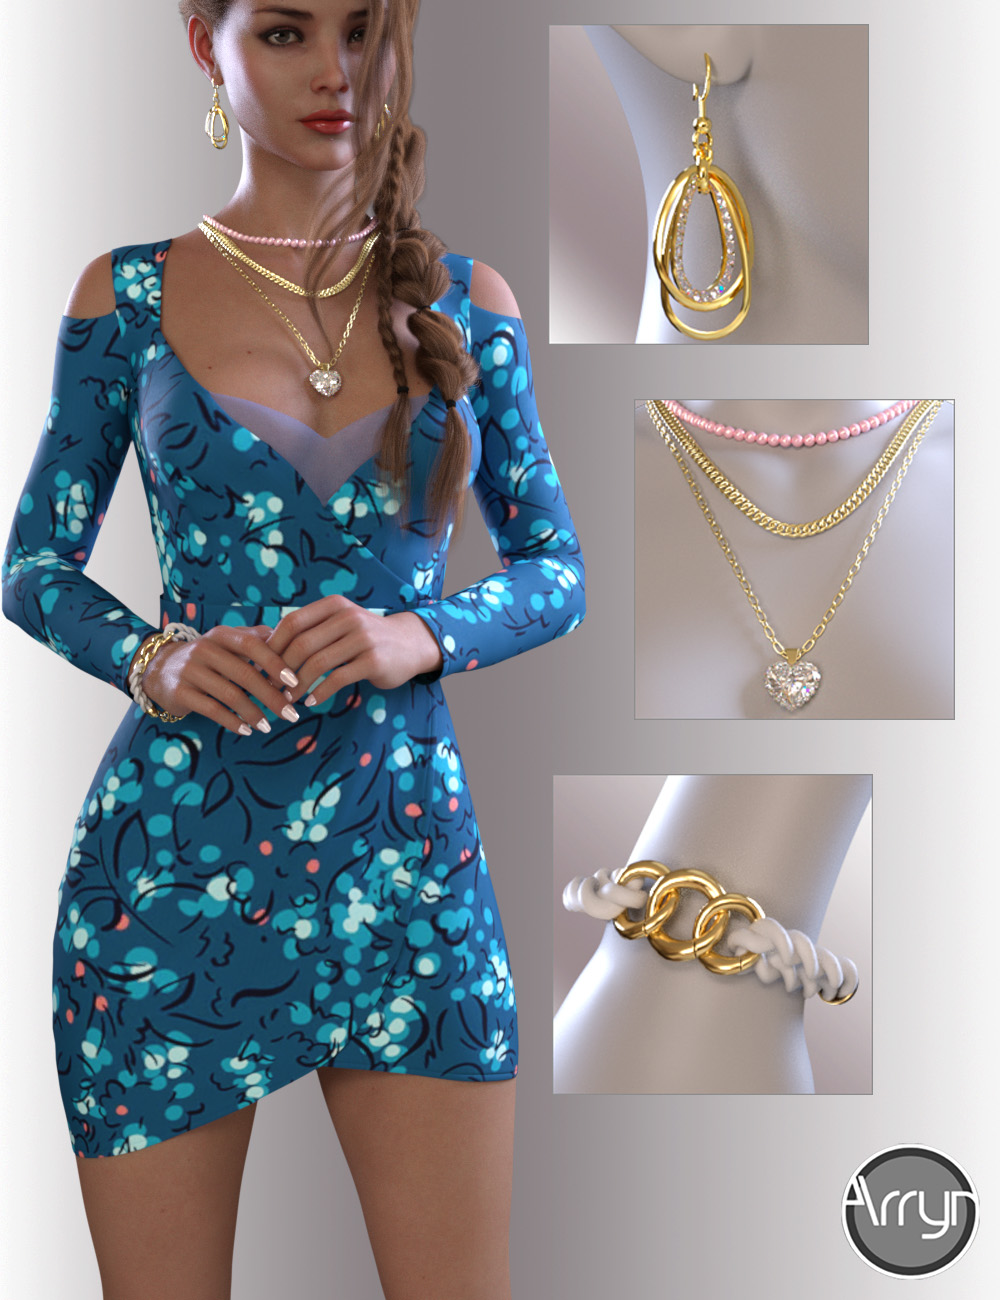 dForce Zoe Outfit for Genesis 8.1 Females by: OnnelArryn, 3D Models by Daz 3D